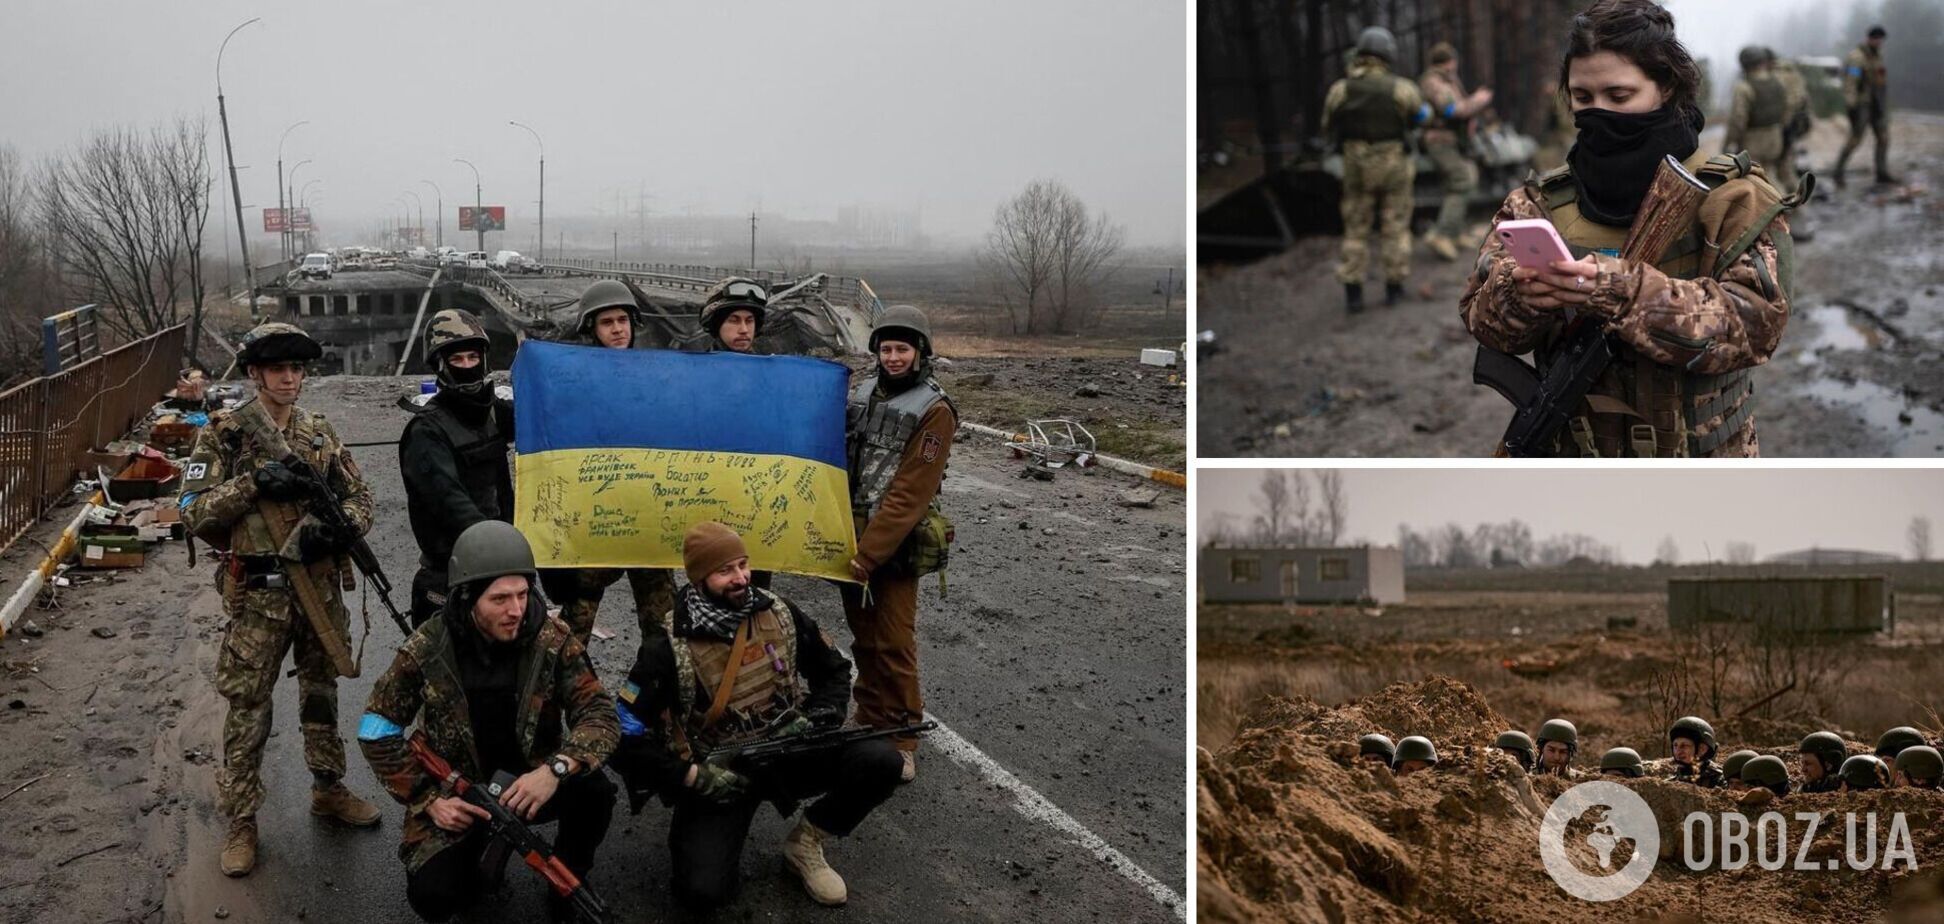 Будущее страны зависит от силы сопротивления украинцев